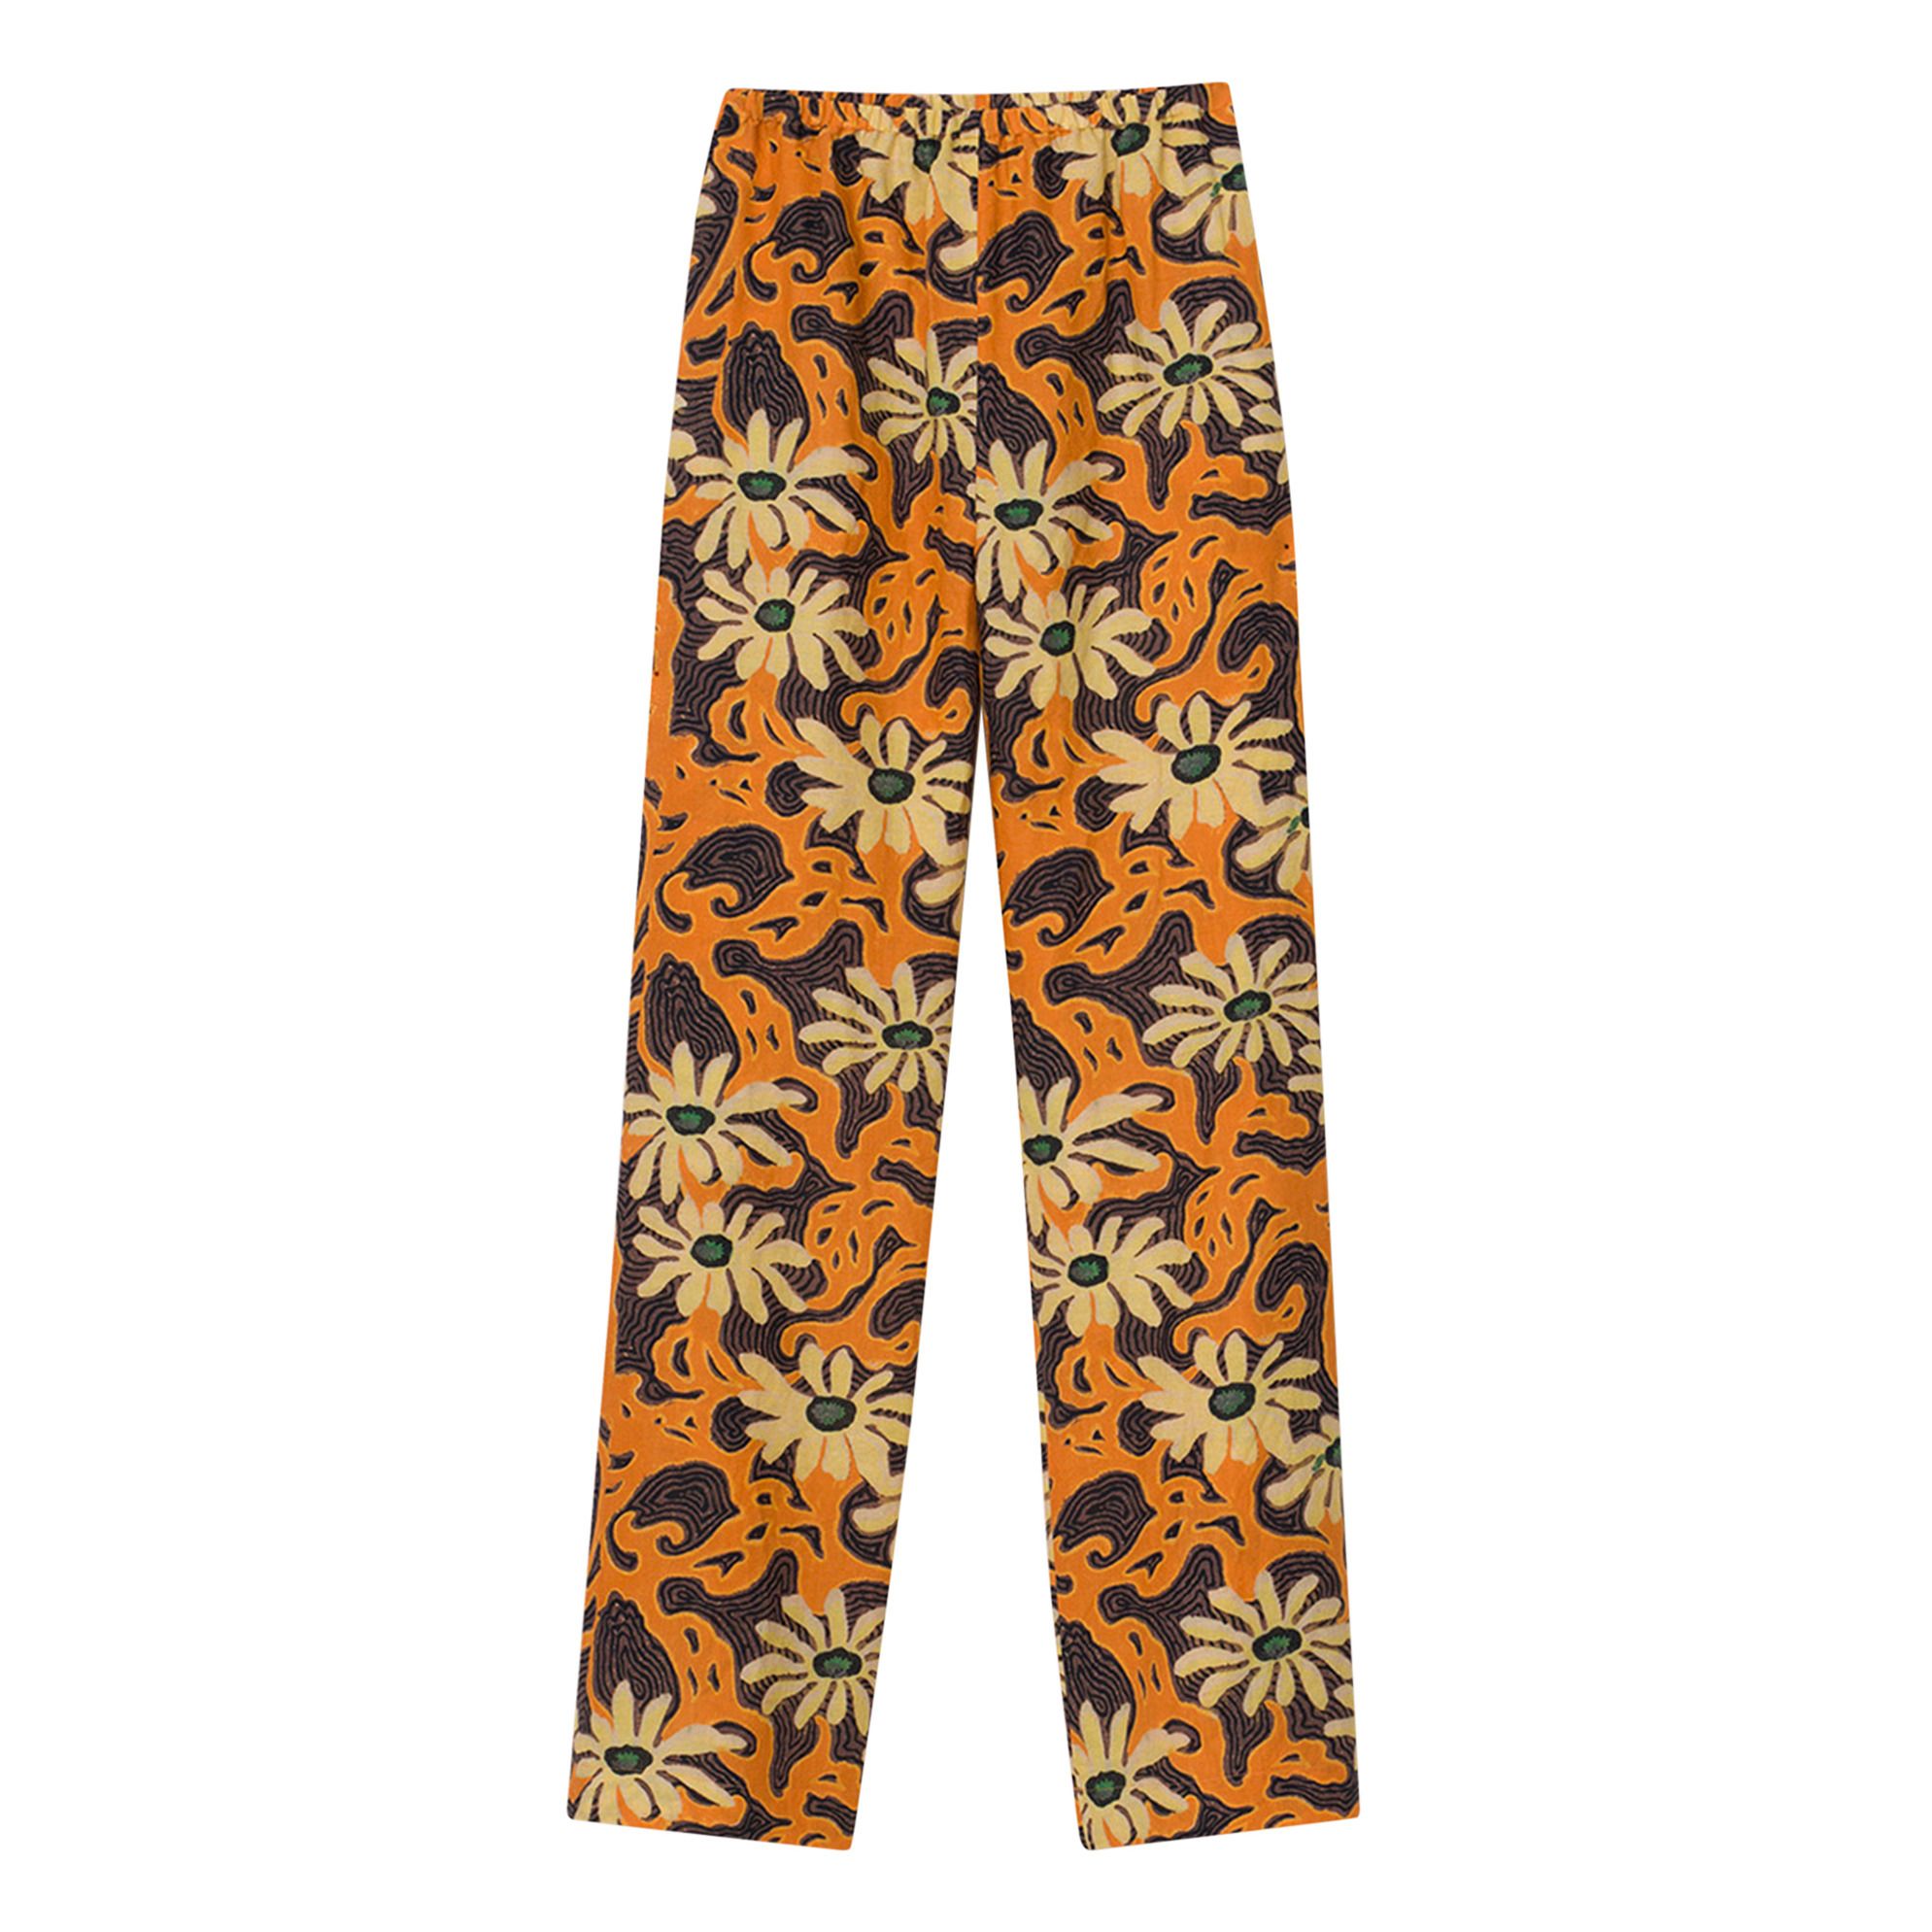 Nanushka - Pantalon Yareli Crêpe Imprimé Floral - Femme - Orange